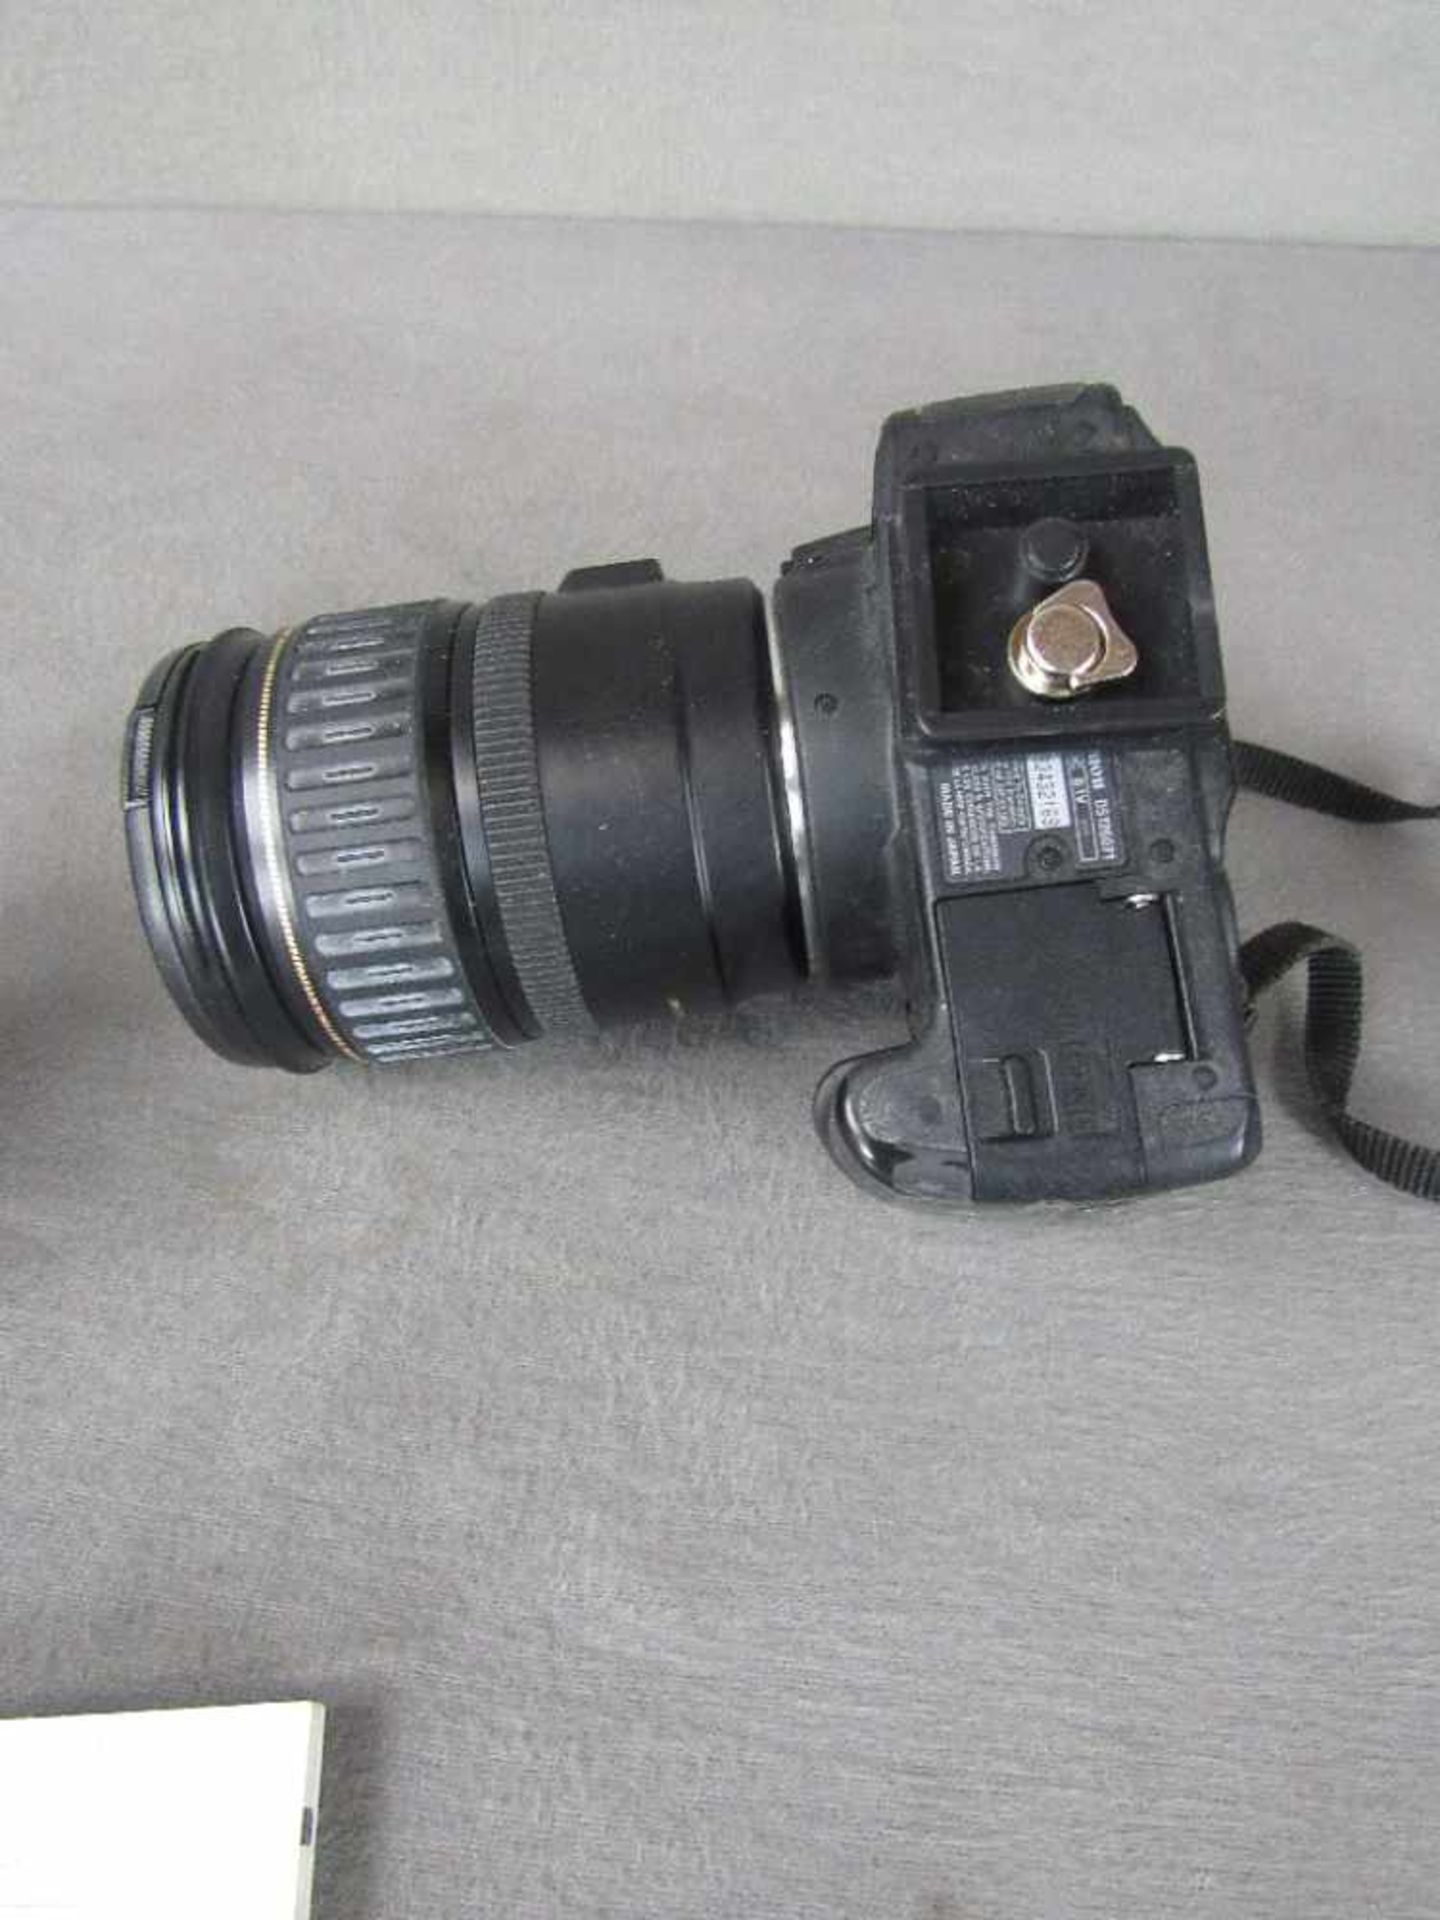 Spiegelreflexkamera Eos 350 D mit Anleitung und zwei Objektiven 1x 18-55mm 1x Ultrasonic 28-135mm - Bild 5 aus 5